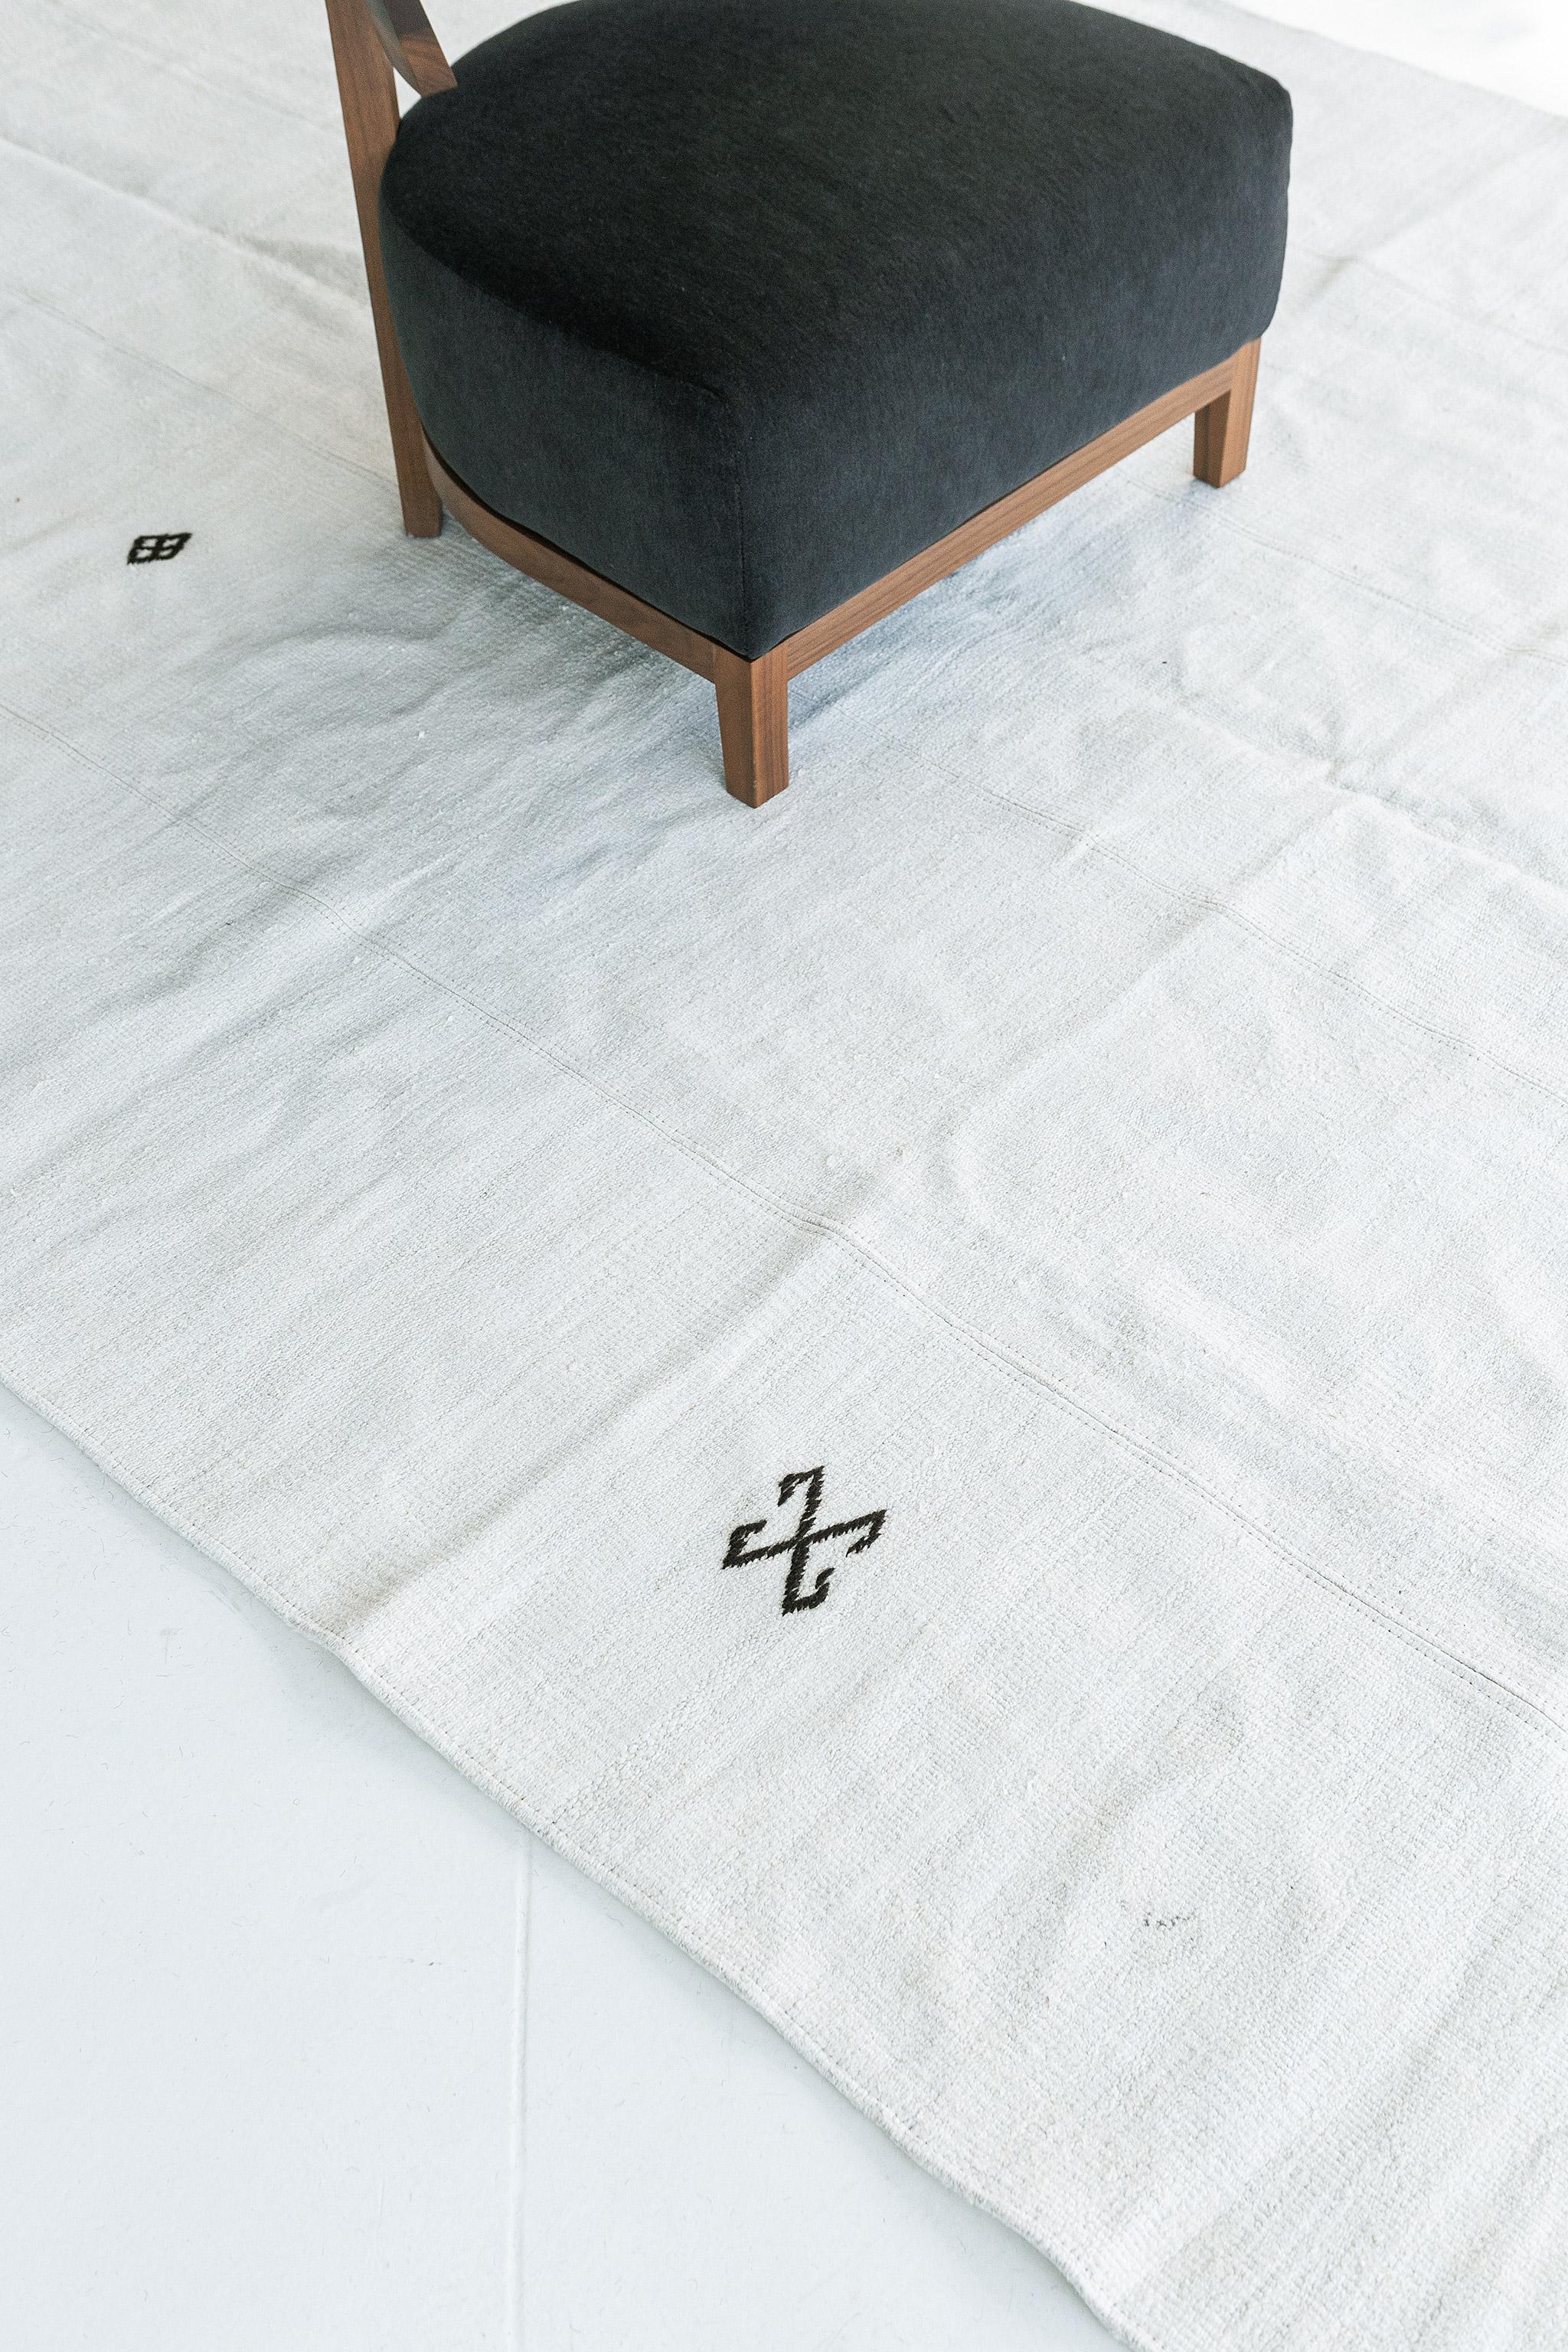 Dieser bemerkenswerte anatolische Teppich ist ein bescheidener, weißer Flachgewebe-Teppich, der Leben und Licht in den Raum bringt. Das Design ist mit vier lebendigen Symbolen durch den Hanfflor gestaltet. Anatolian wurde entwickelt, um auch bei